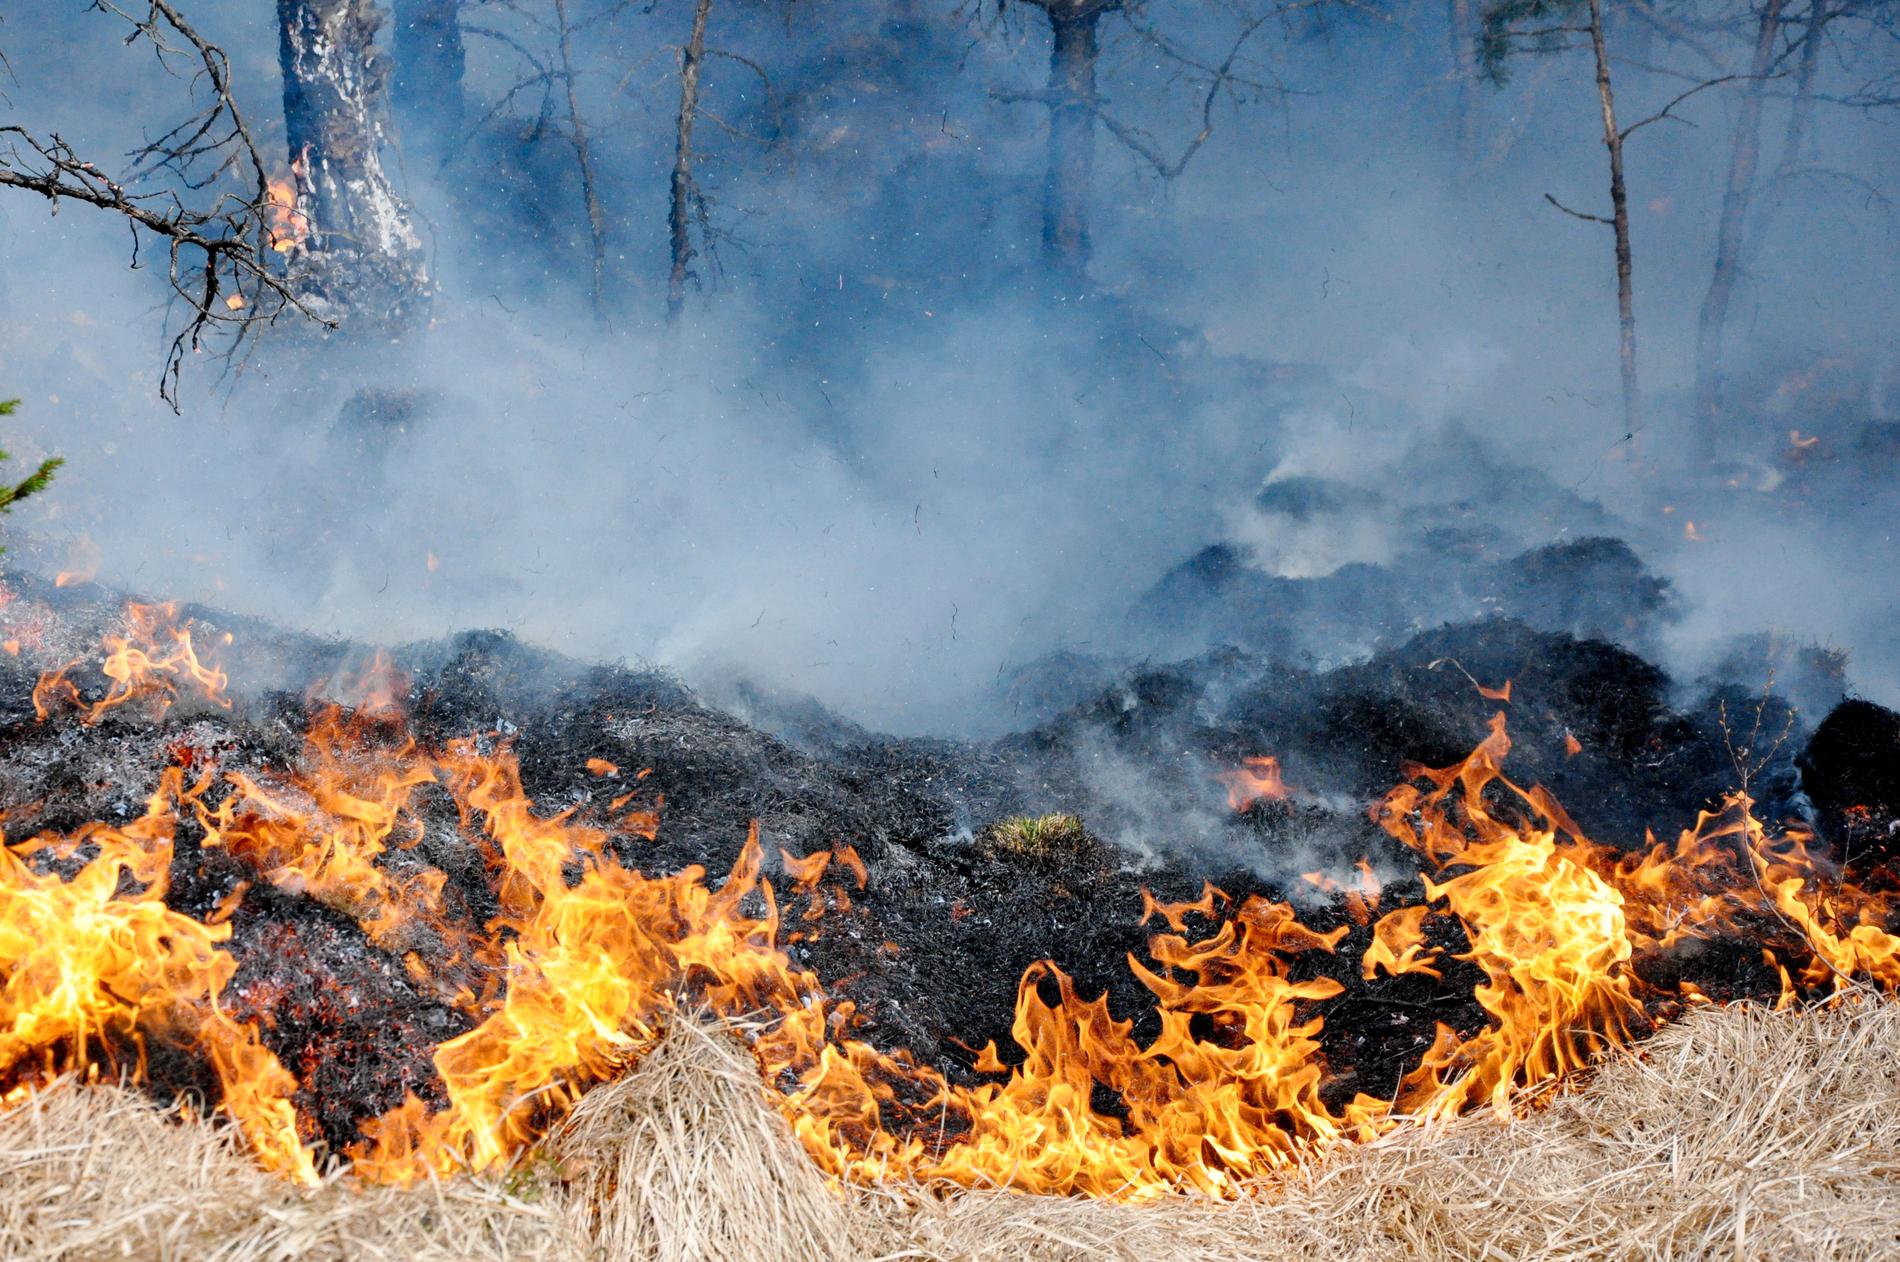 Det råder stor brandrisk i de uppländska skogarna just nu.